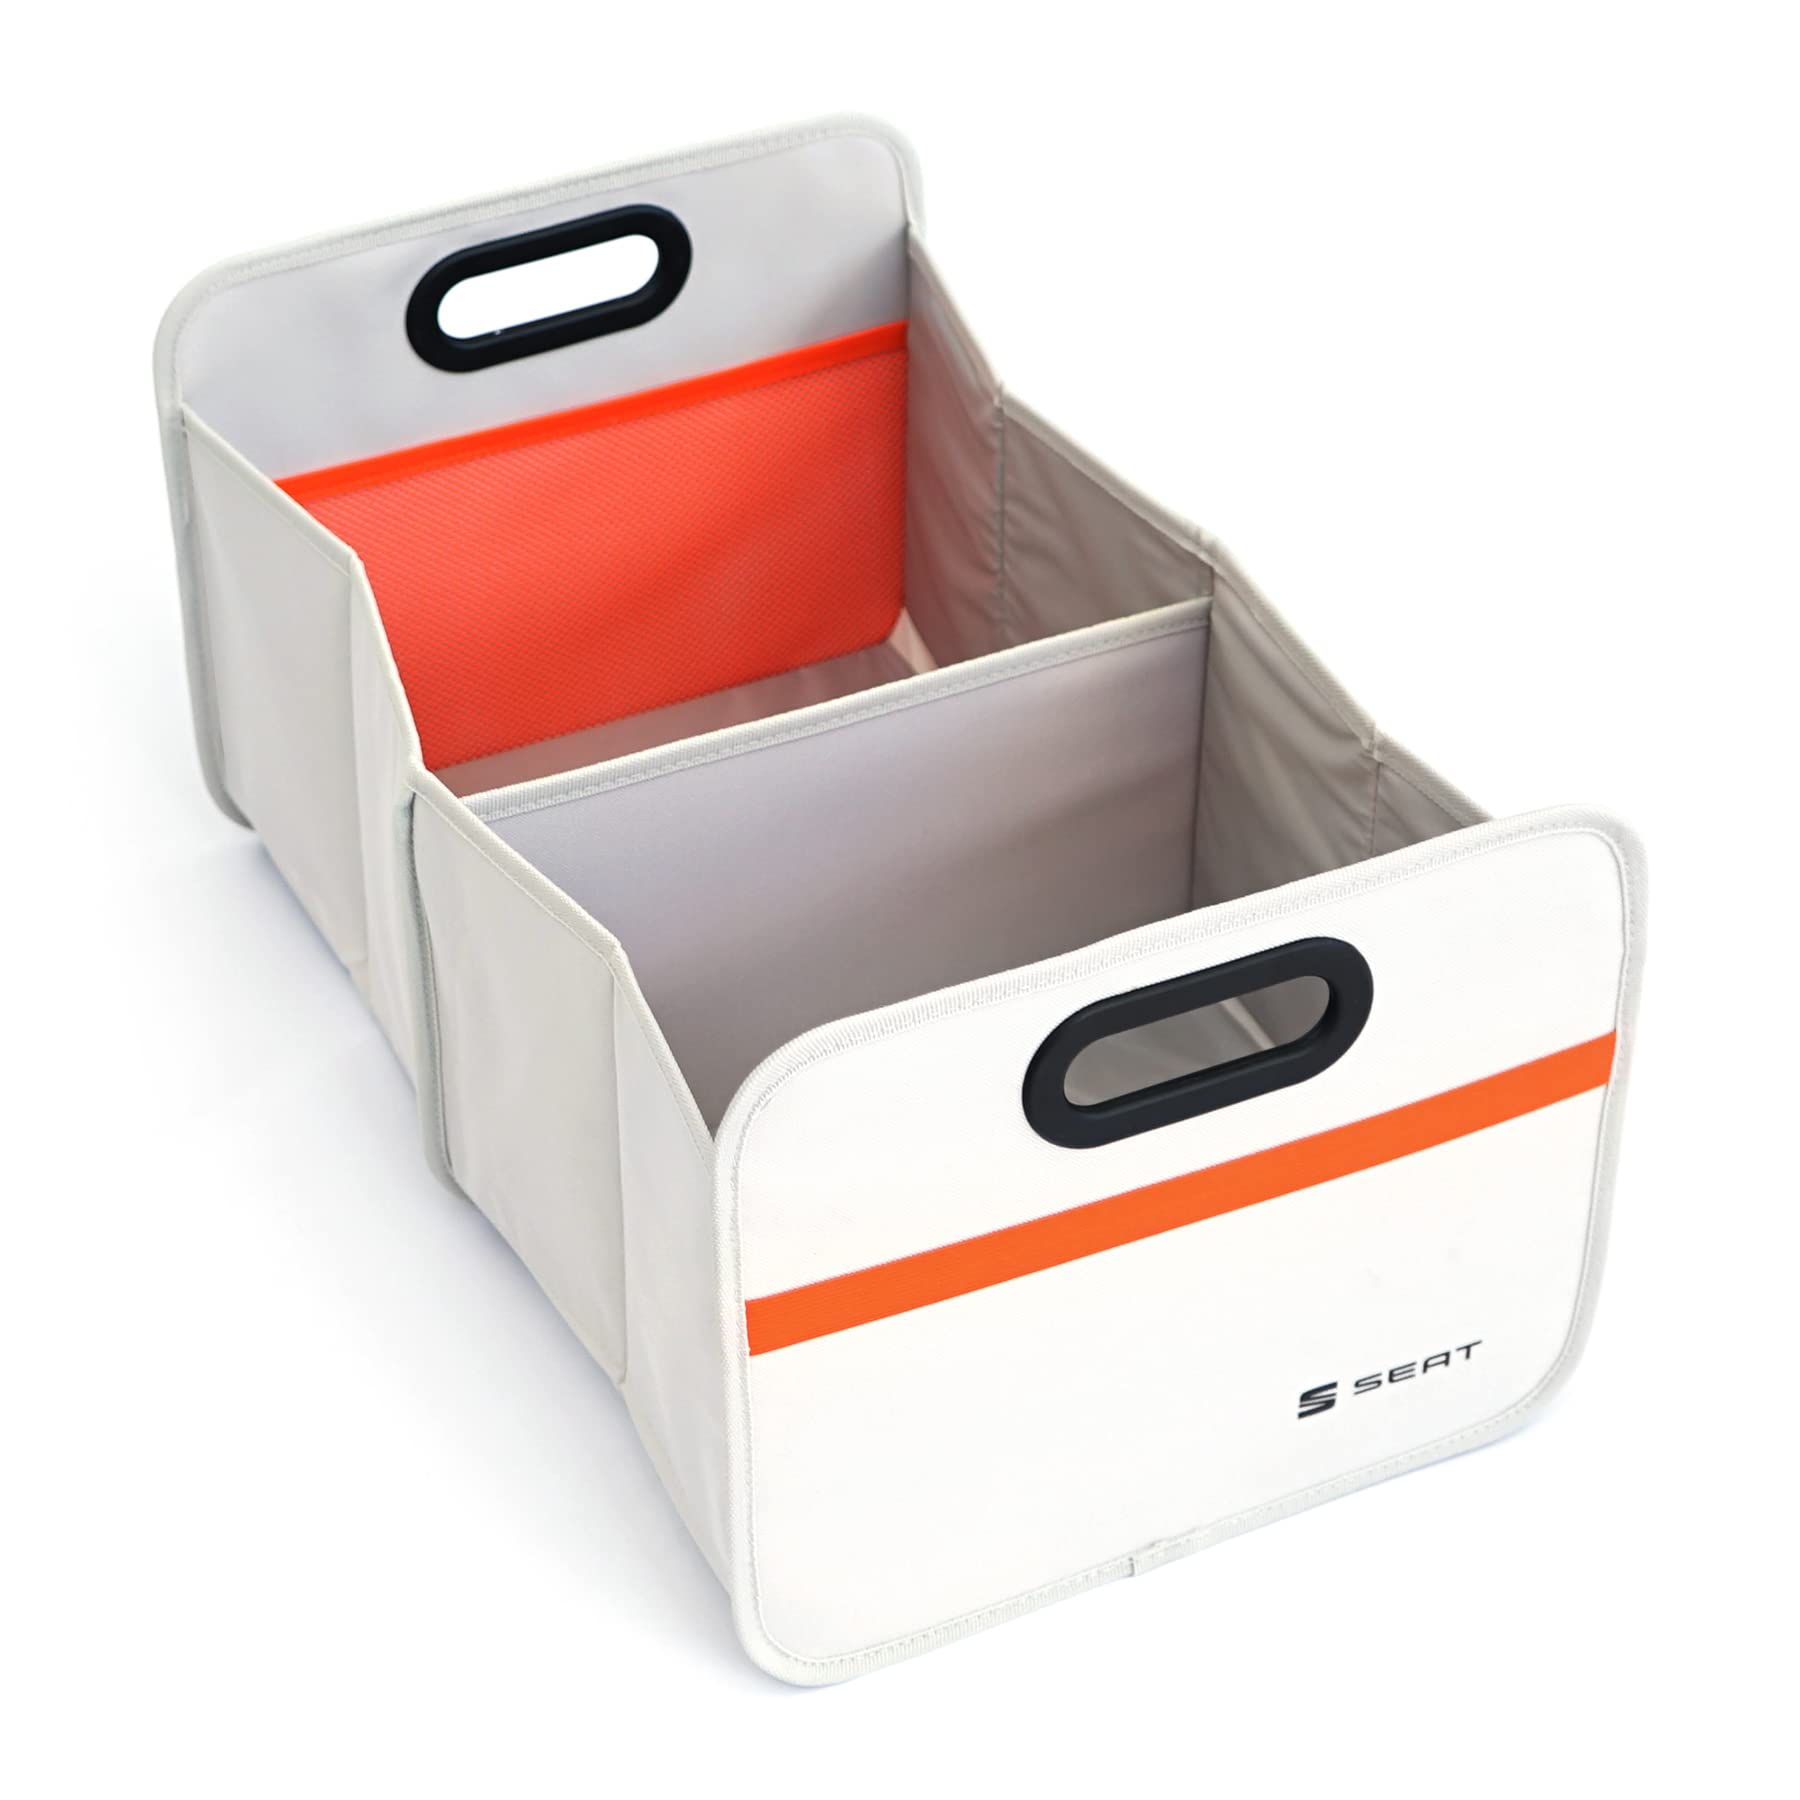 Seat OKD105551219 Faltbox Tasche Kofferraumbox Kiste Einkaufskorb Tasche Faltschachtel Transportbox, grau/orange von Seat